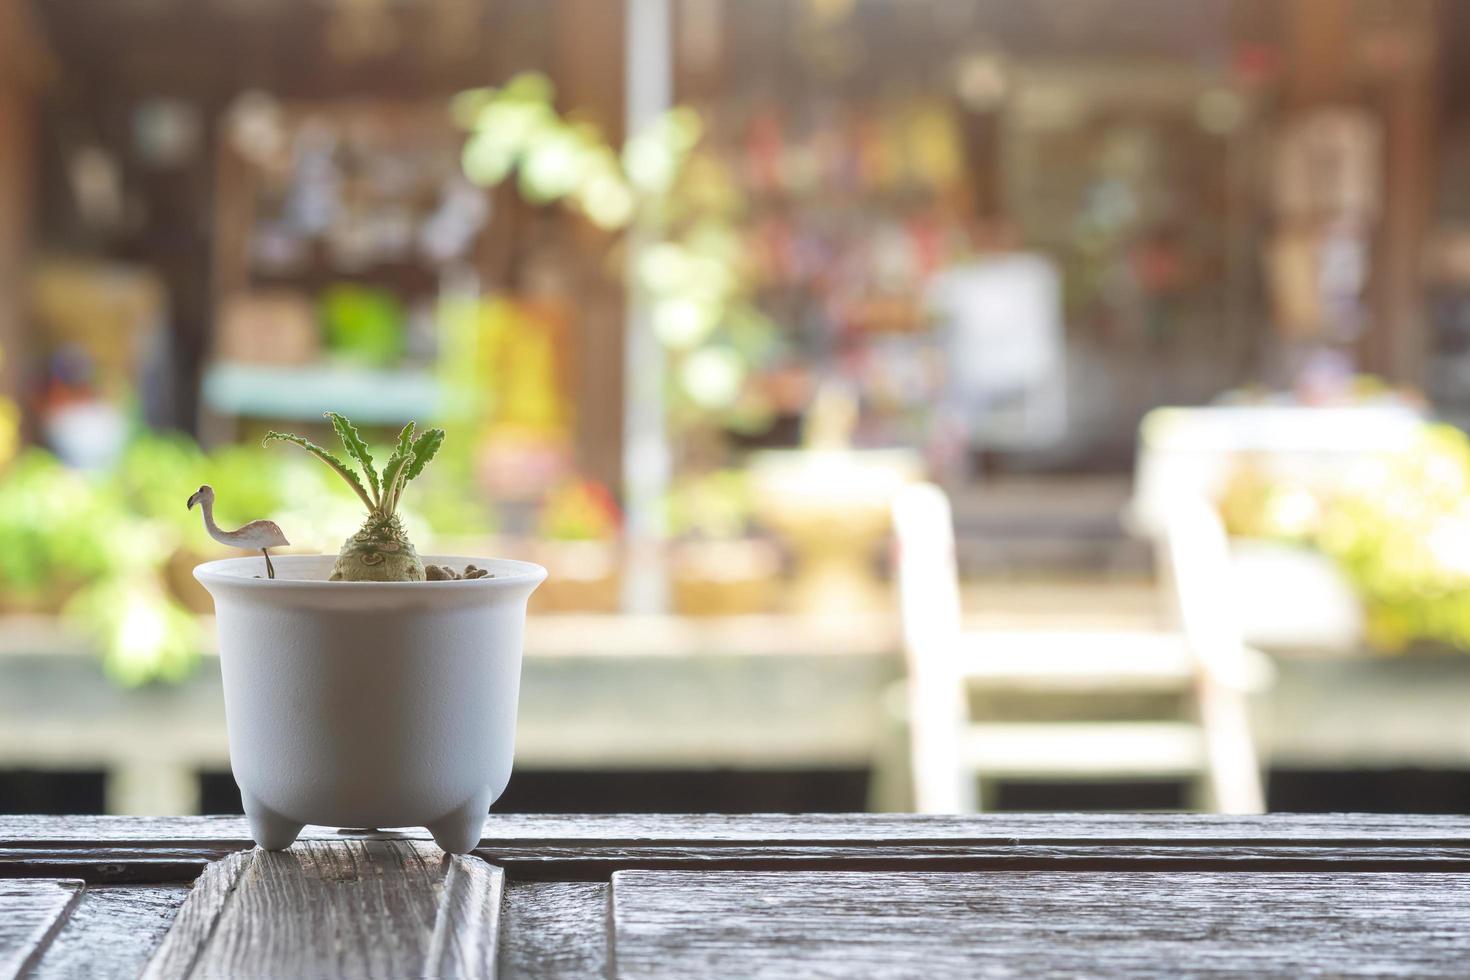 pequena planta de dorstenia em vaso de flores brancas na mesa de madeira no café ou loja de alimentos com fundo desfocado do mercado flutuante ao ar livre foto